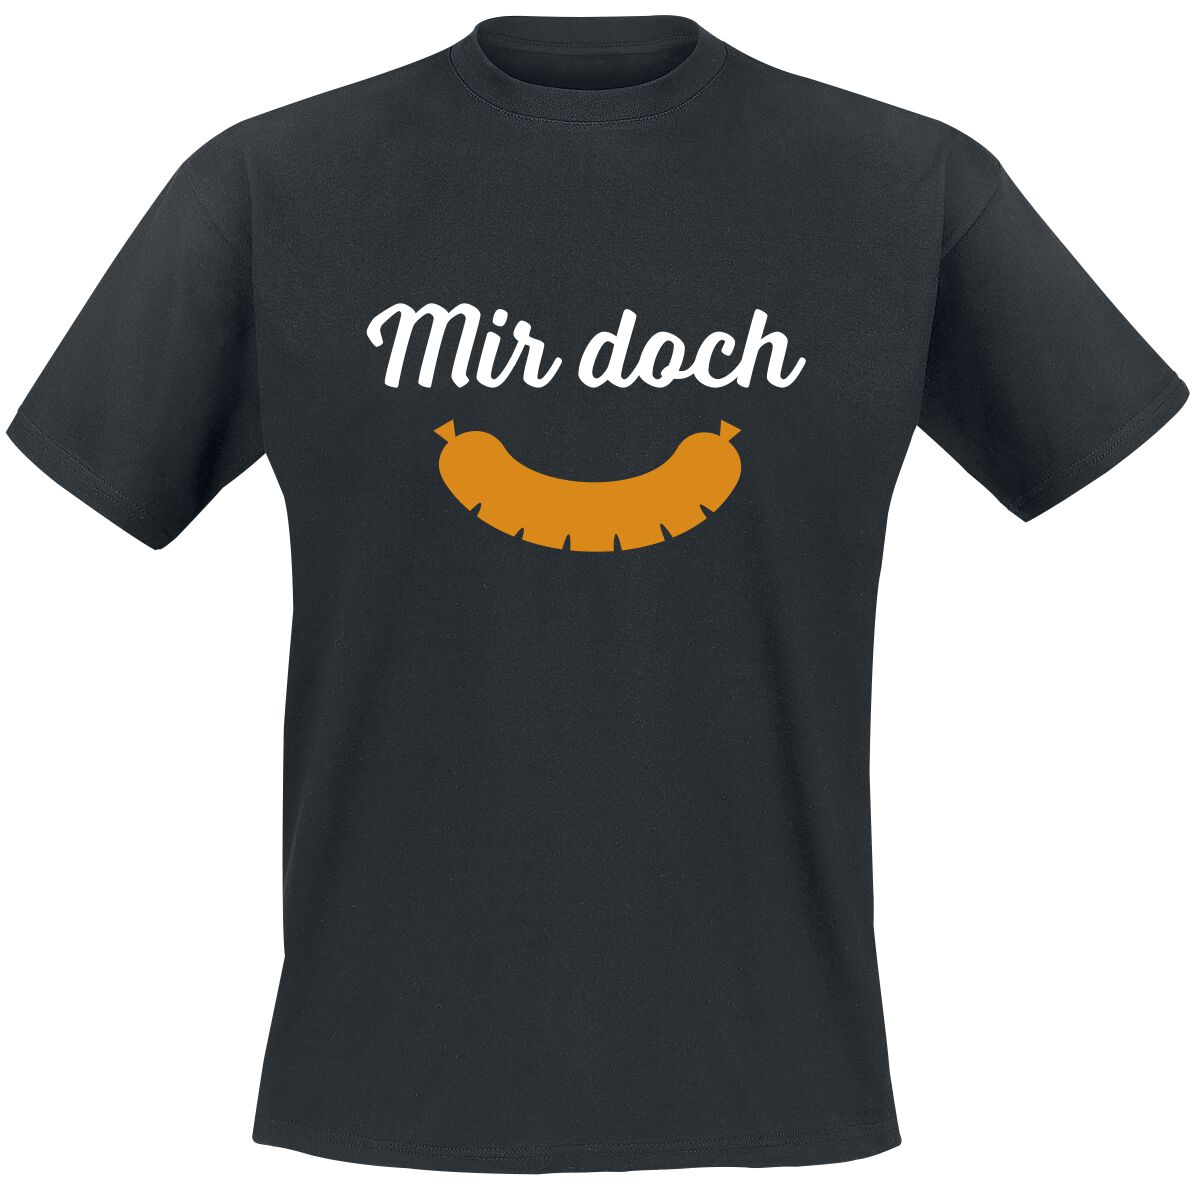 Food T-Shirt - Mir doch Wurst - M bis 5XL - für Männer - Größe XL - schwarz